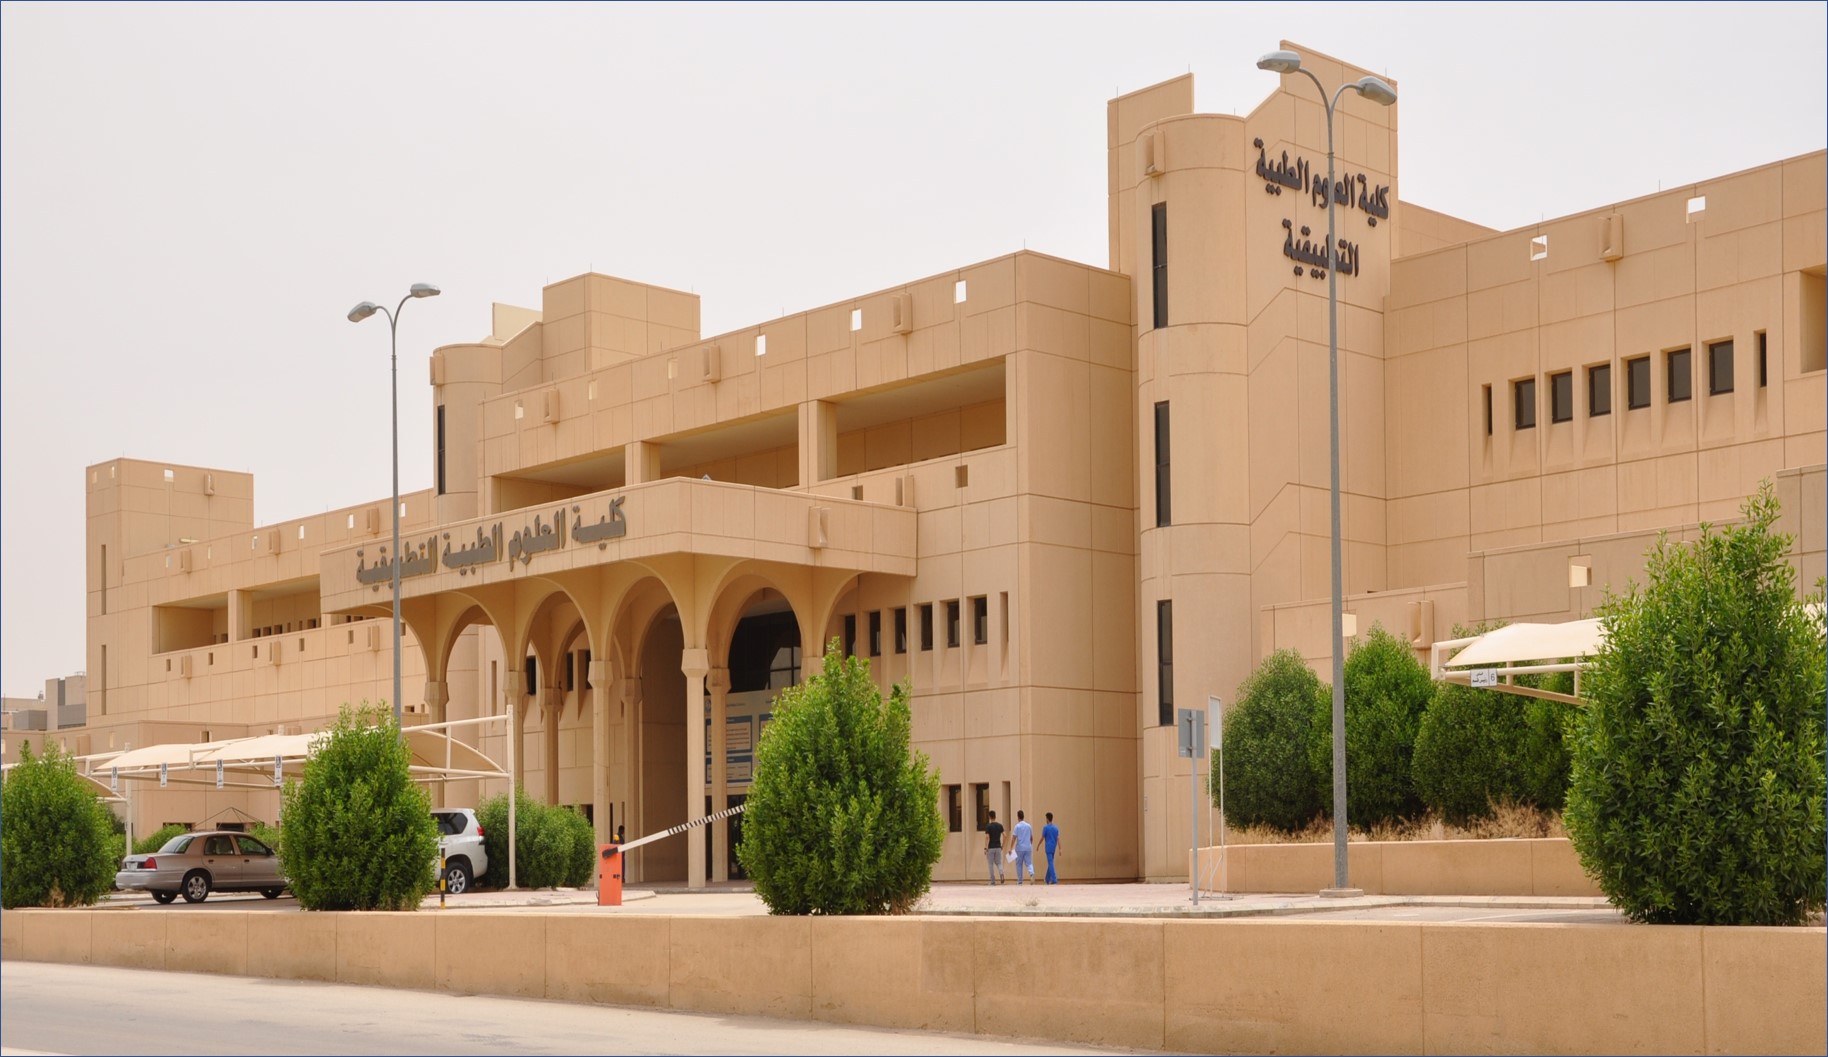 عااجل 122 وظيفة بالمدينة الطبية في جامعة الملك سعود